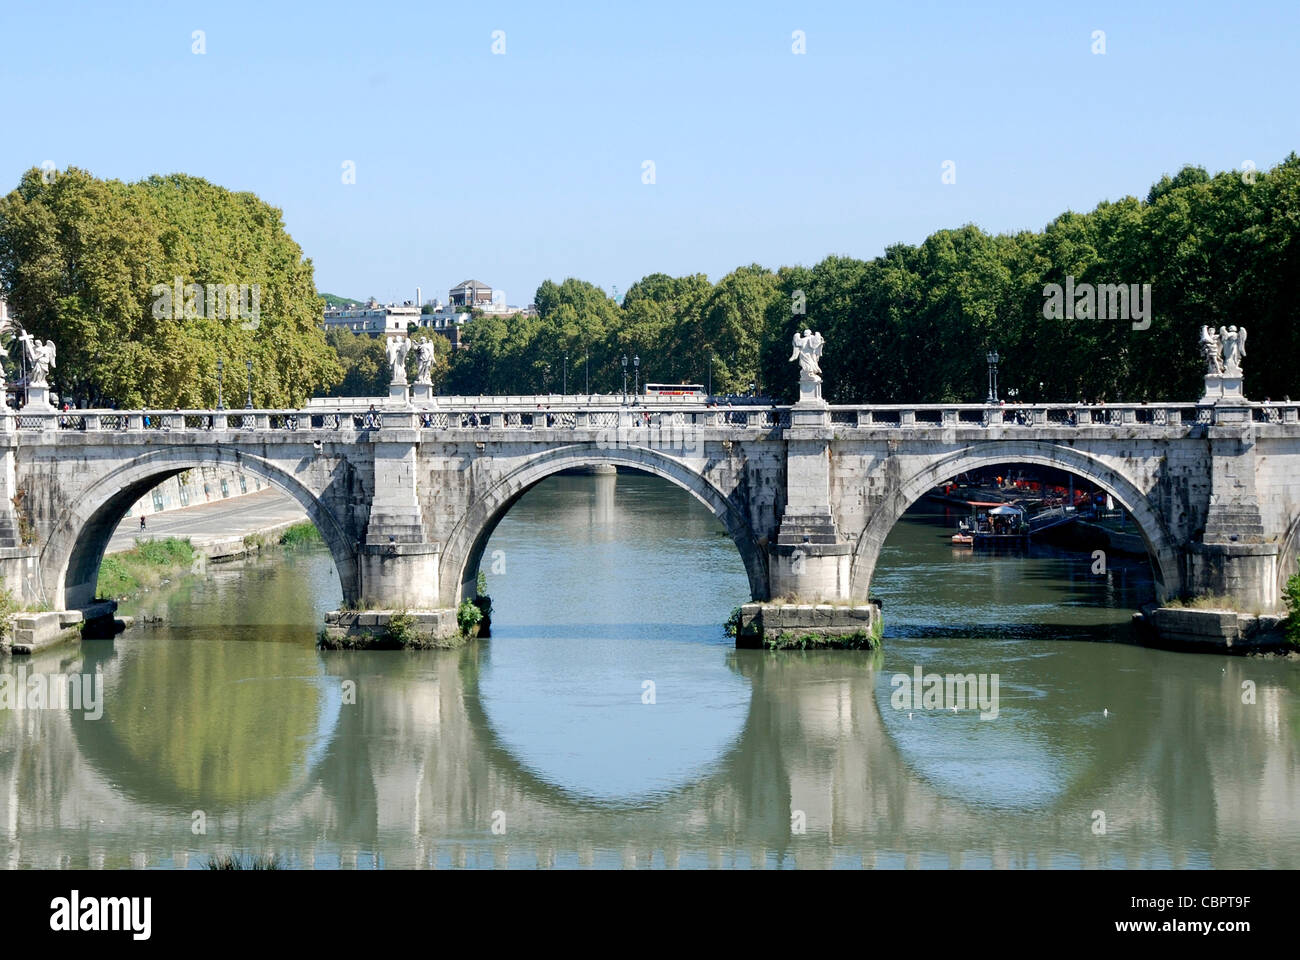 Engel-Brücke am Tiber in Rom. Stockfoto